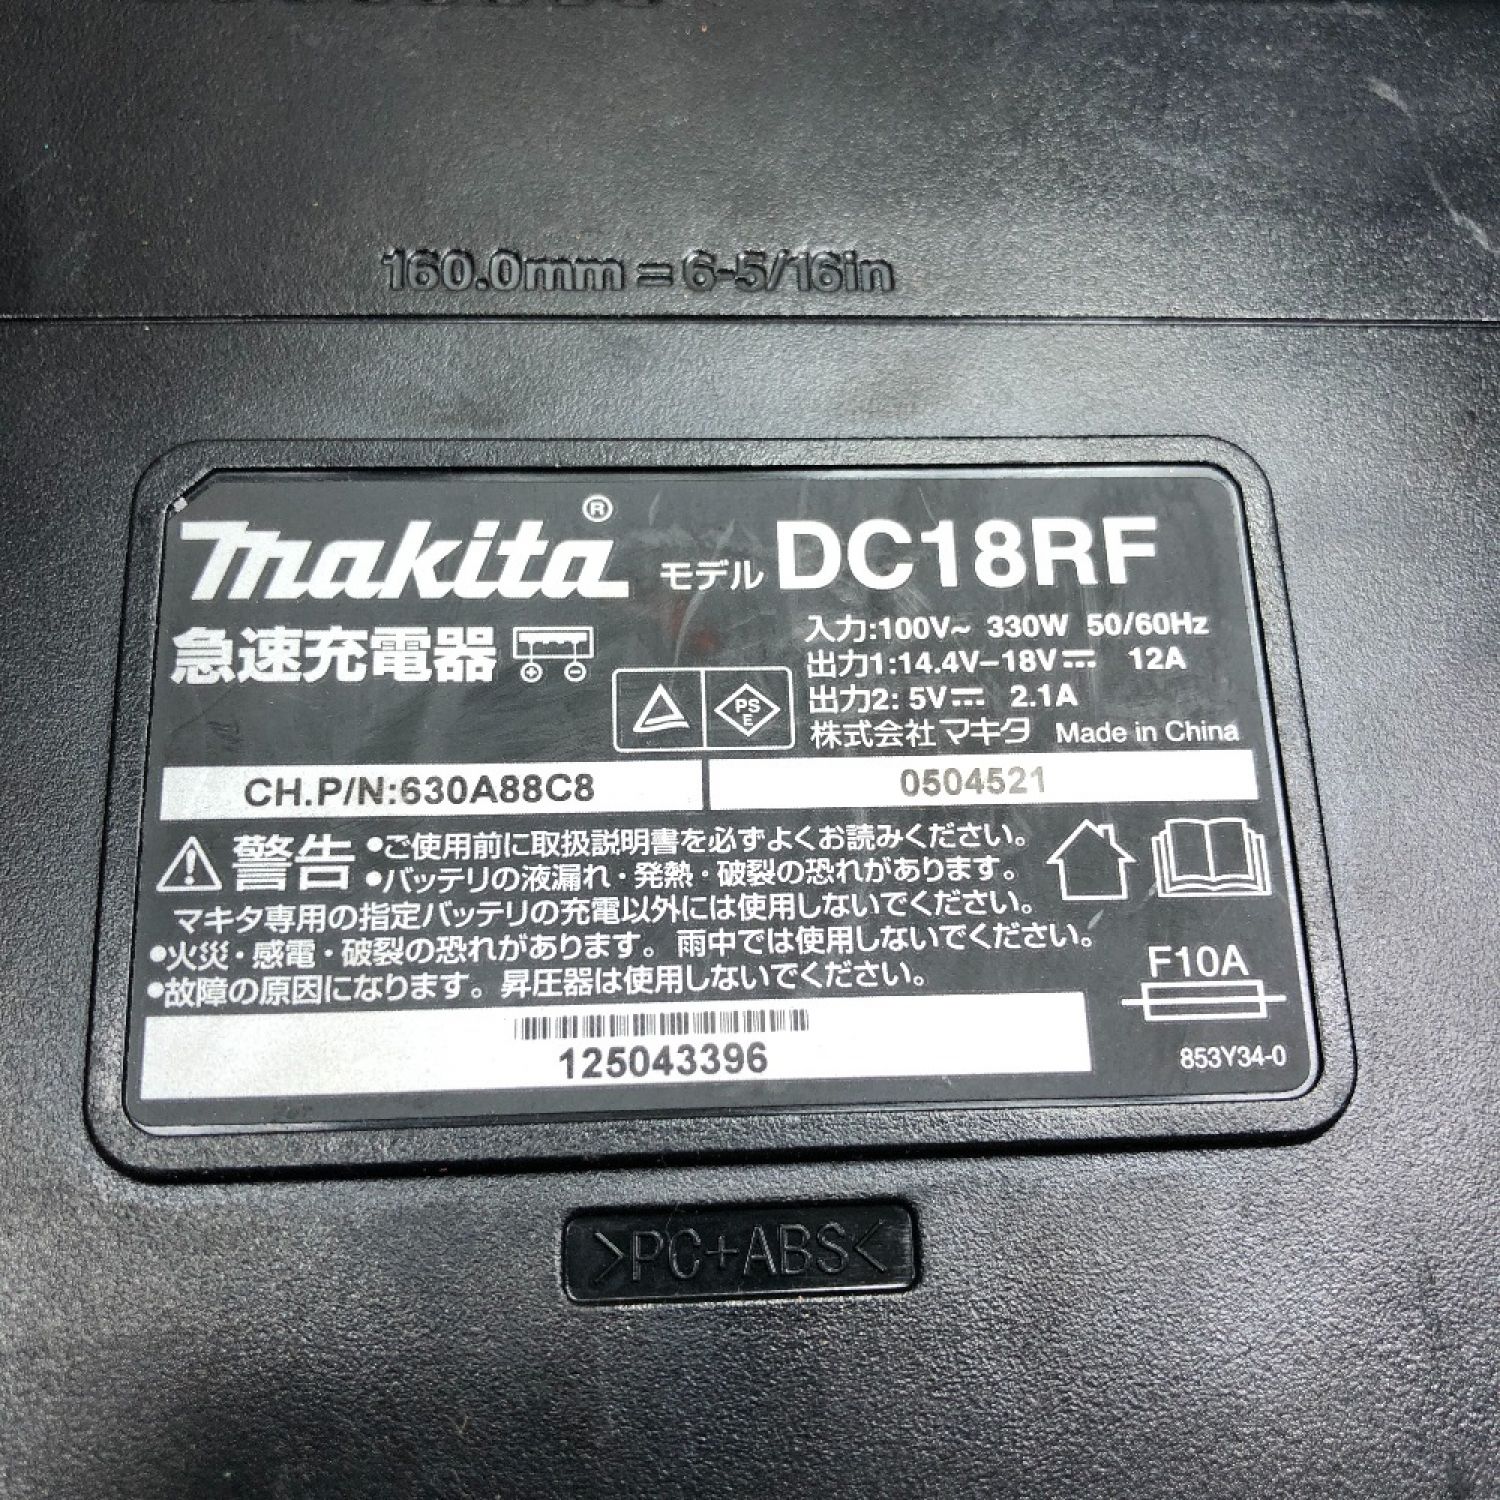 ☆品☆ makita マキタ 18V 24㎜充電式ハンマドリル HR244DRTX バッテリー2個(BL1850)付き 充電器(DC18RC)付き 62391